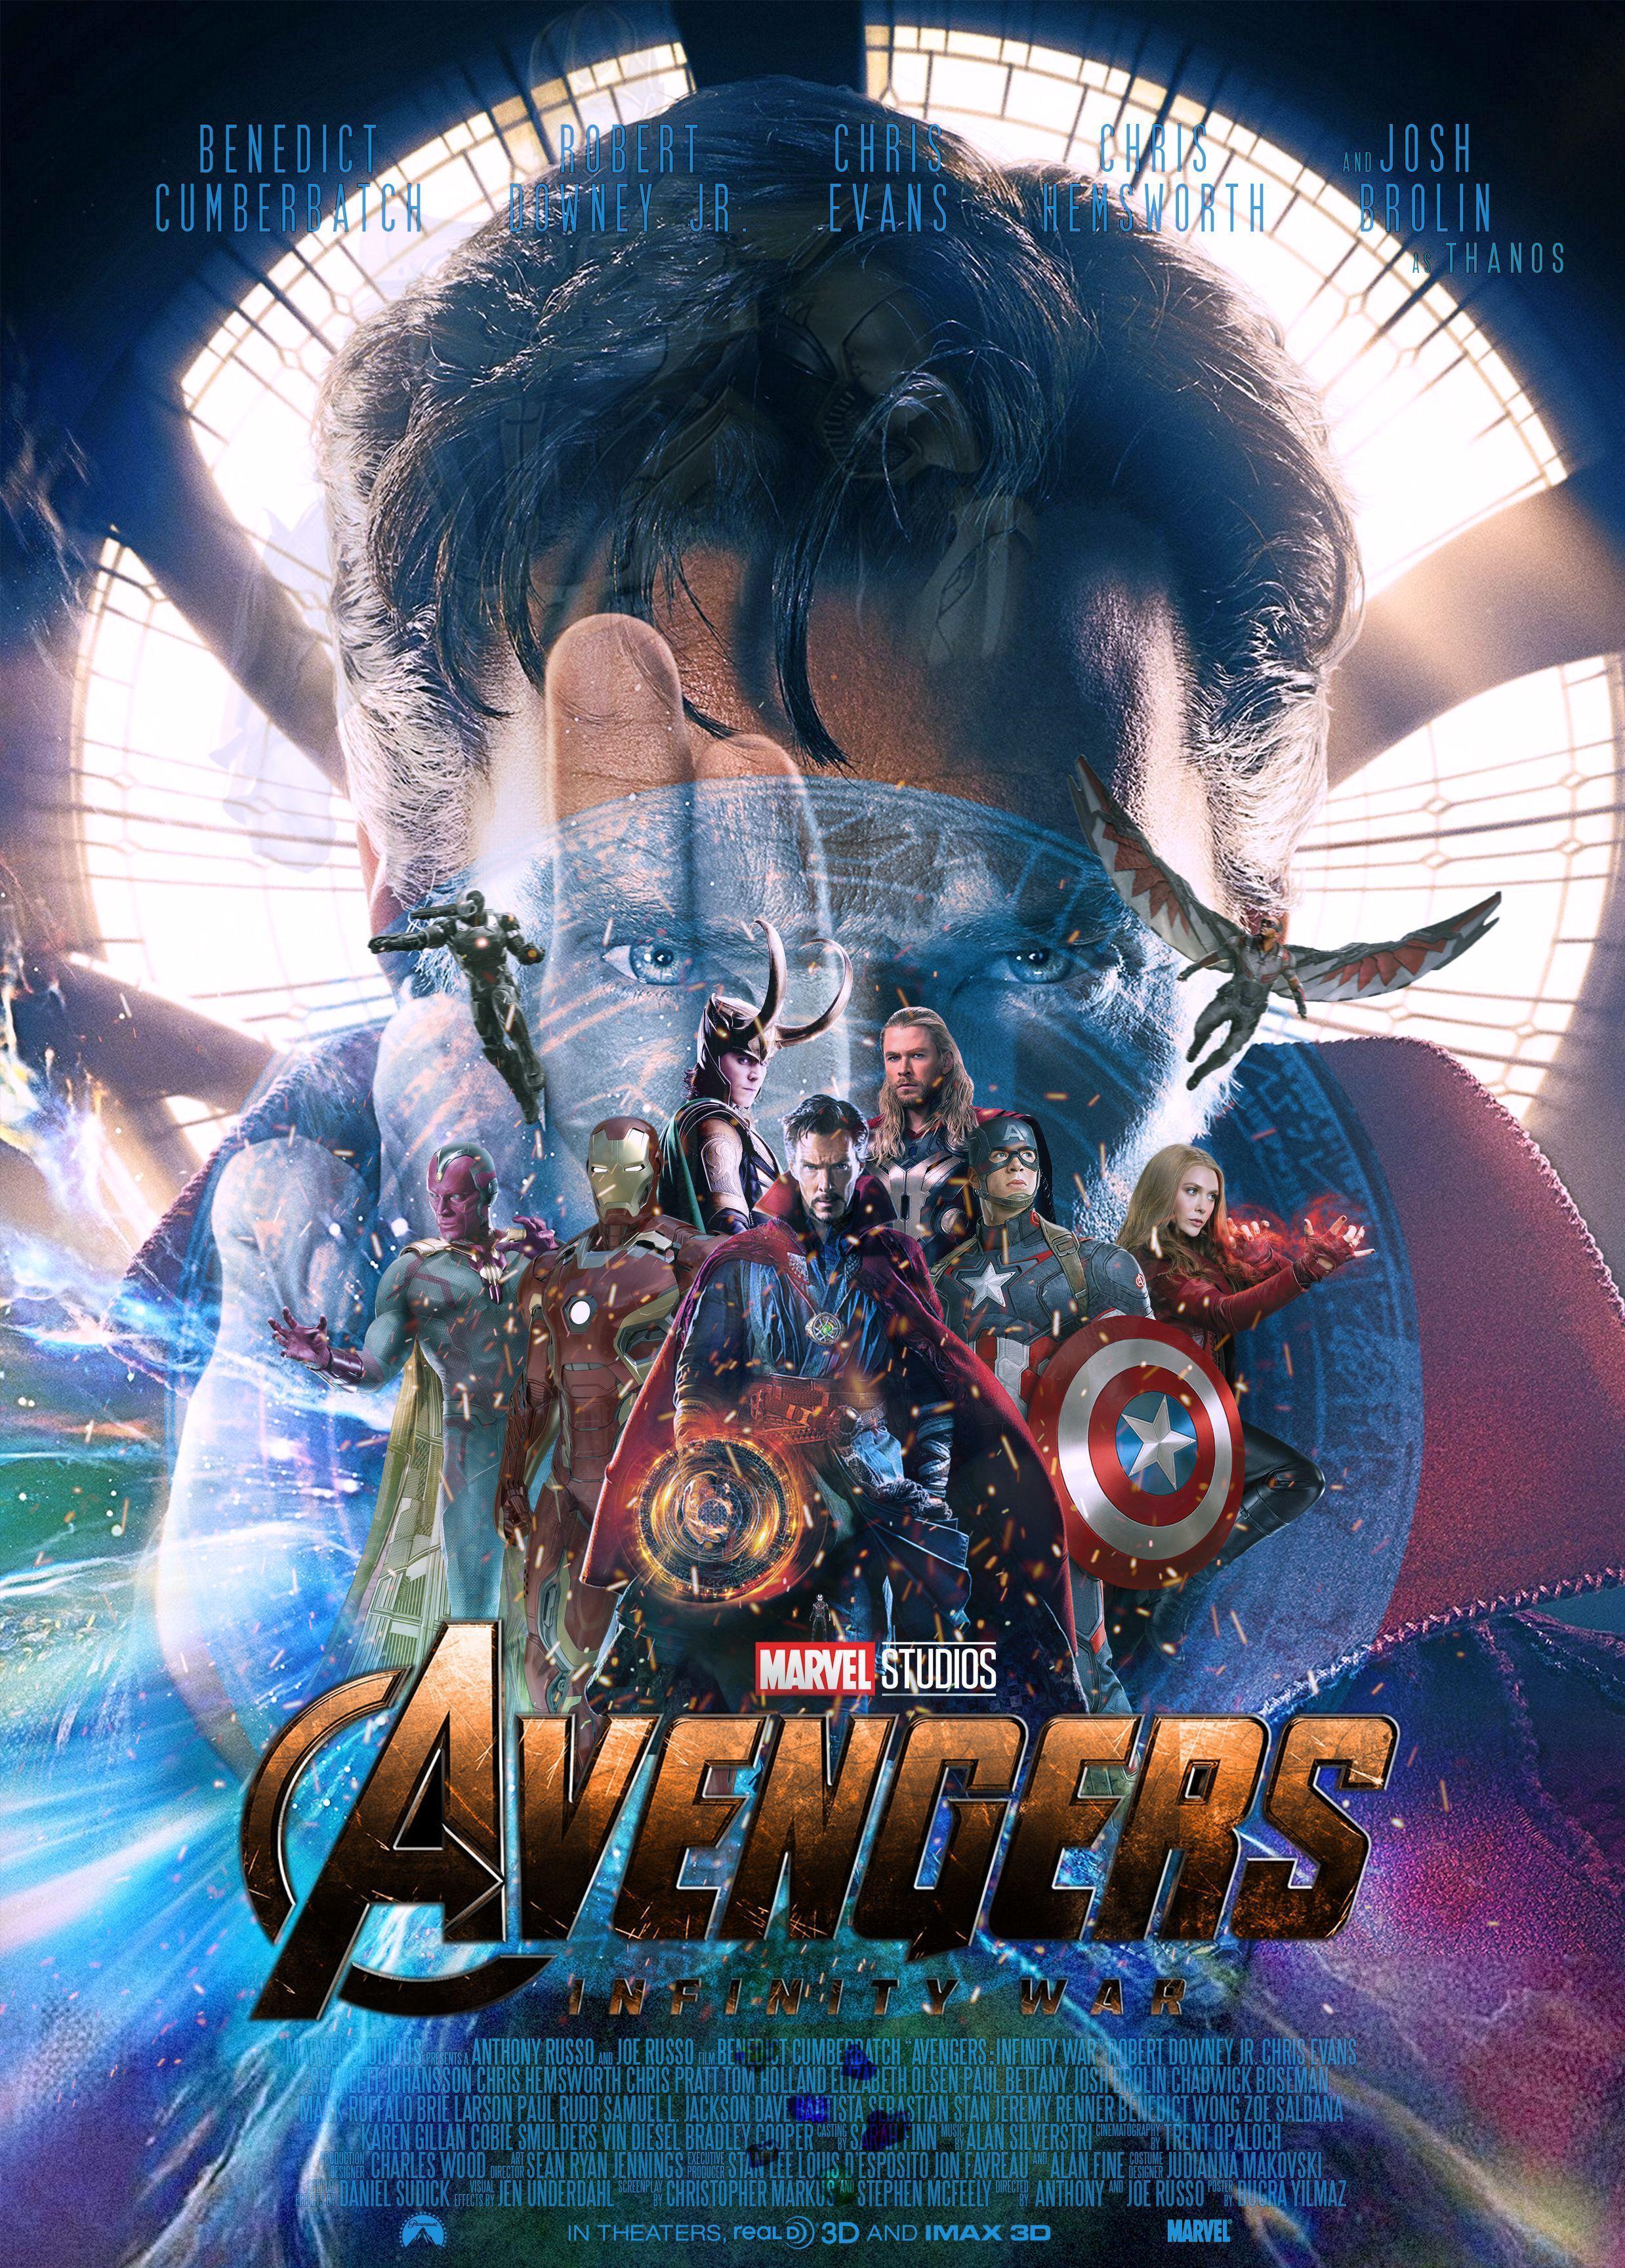 40 Gambar Wallpaper Android Avenger Infinity War terbaru 2020